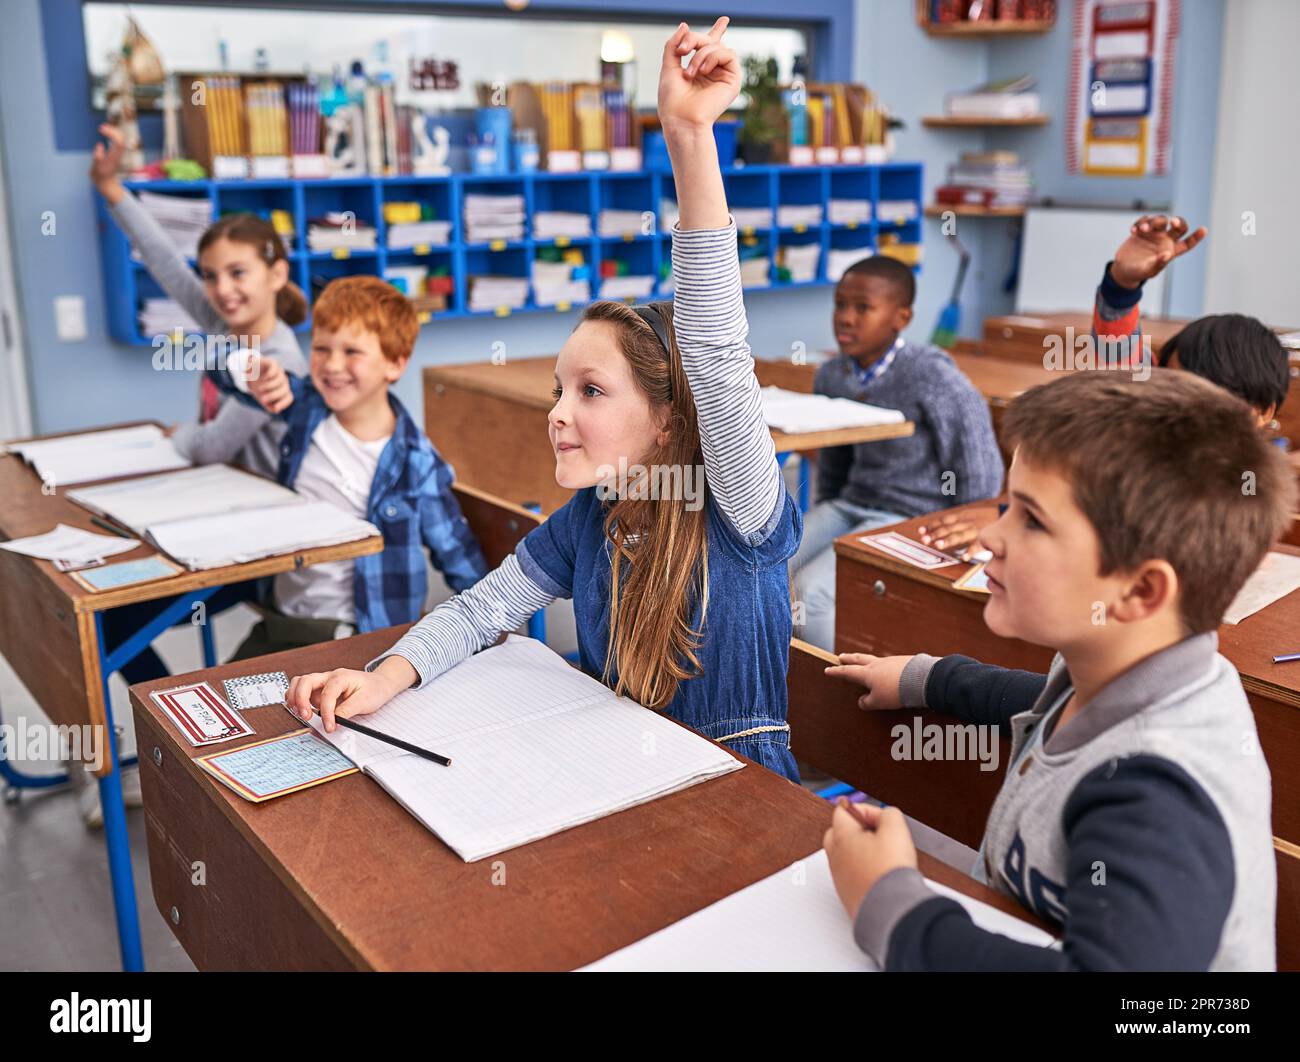 Alle wollen die Frage beantworten. Eine kleine Aufnahme von Grundschulkindern in der Klasse. Stockfoto